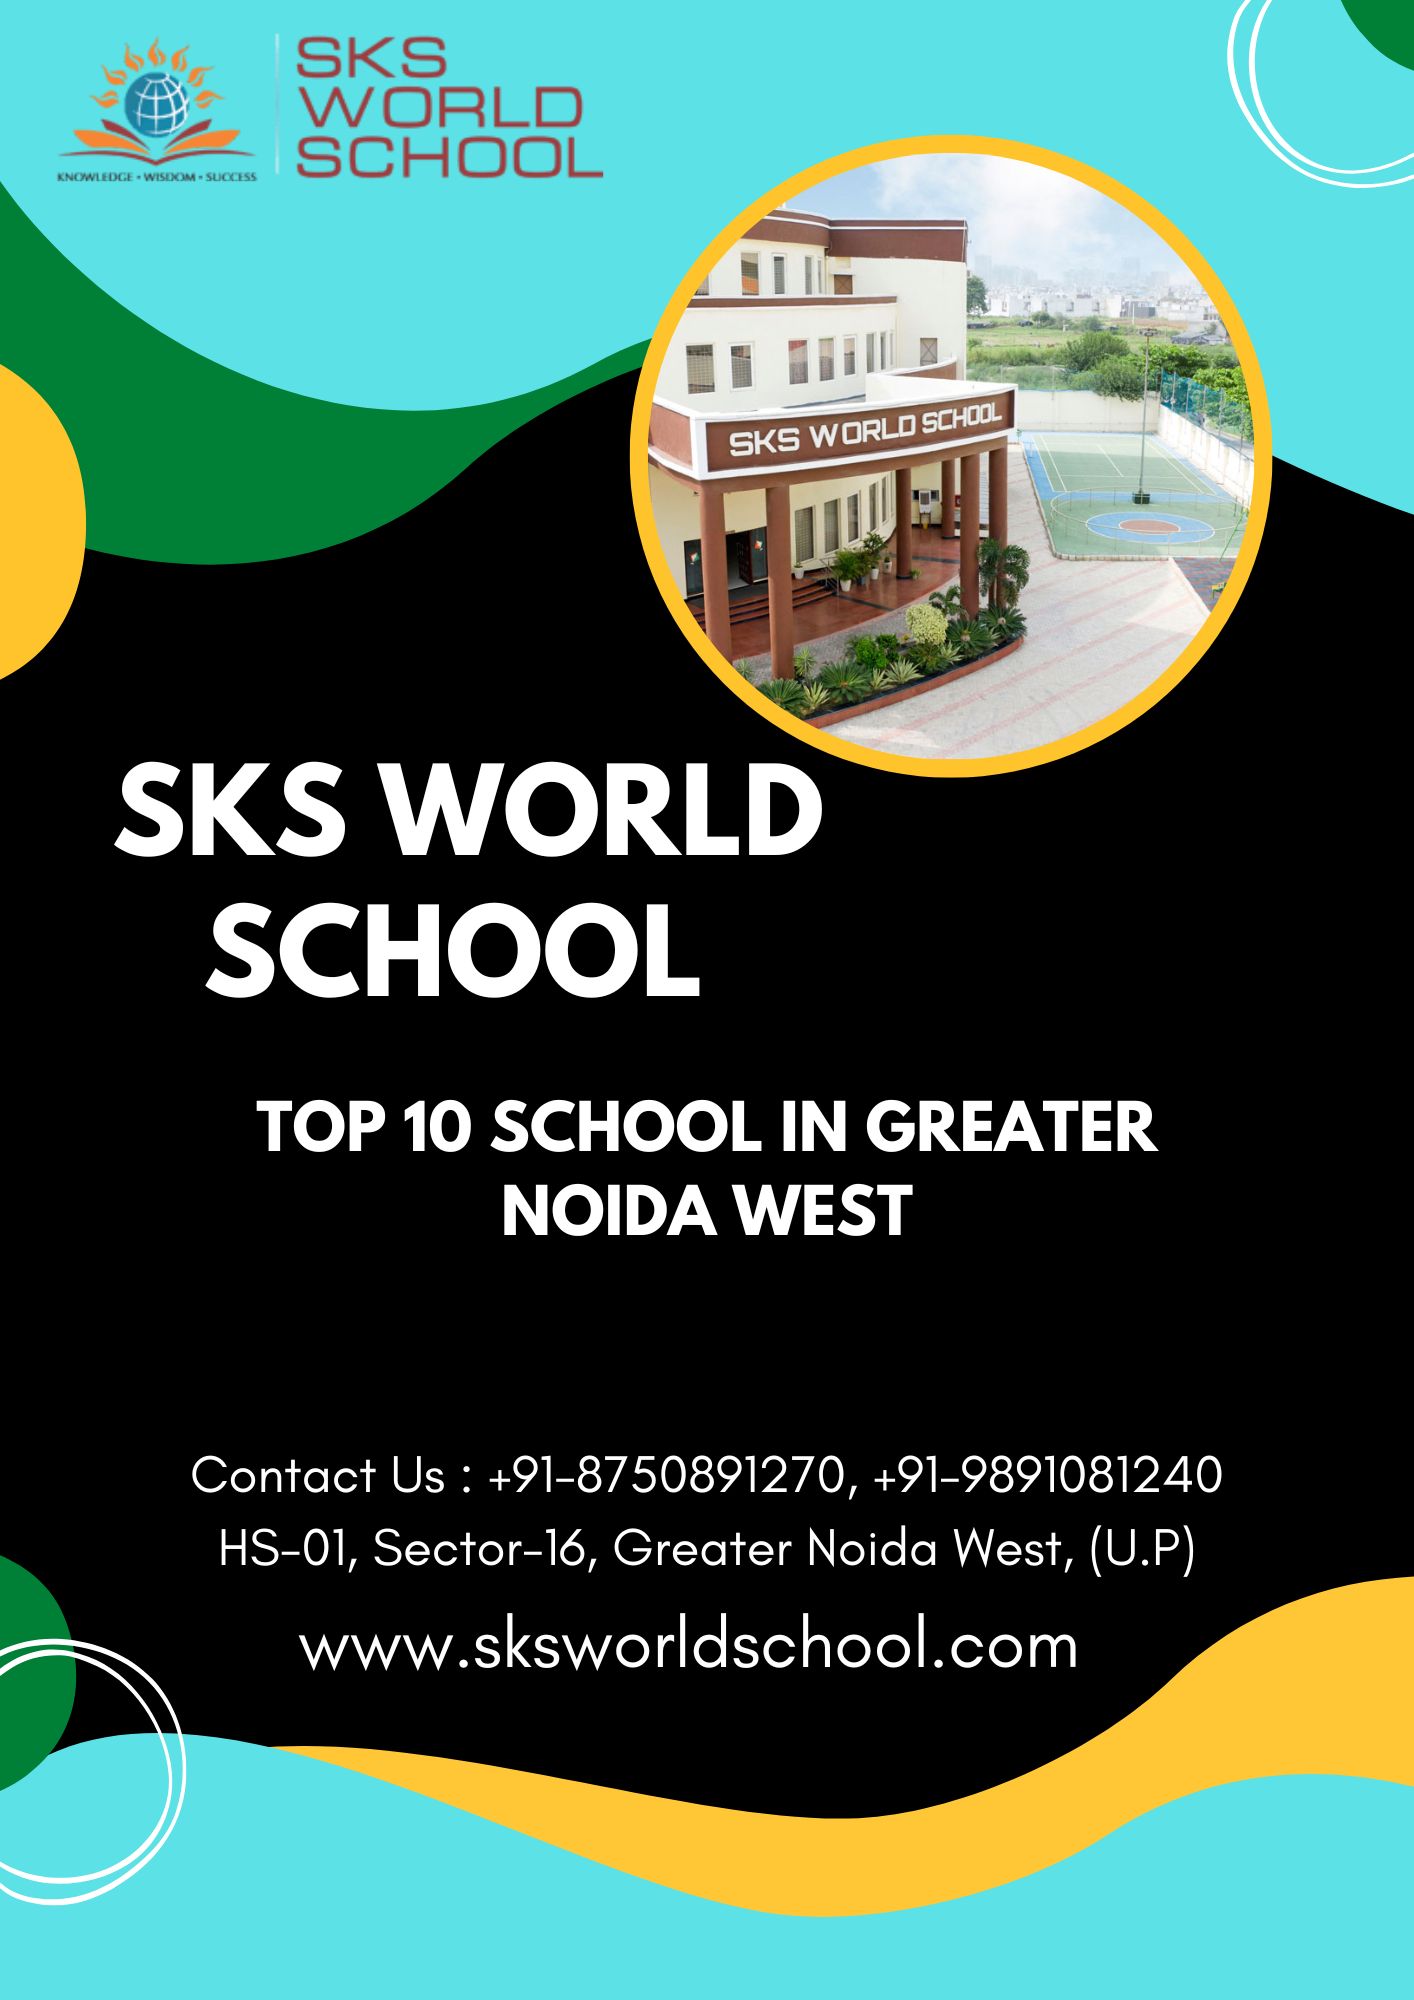 Top 10 School in Greater Noida West